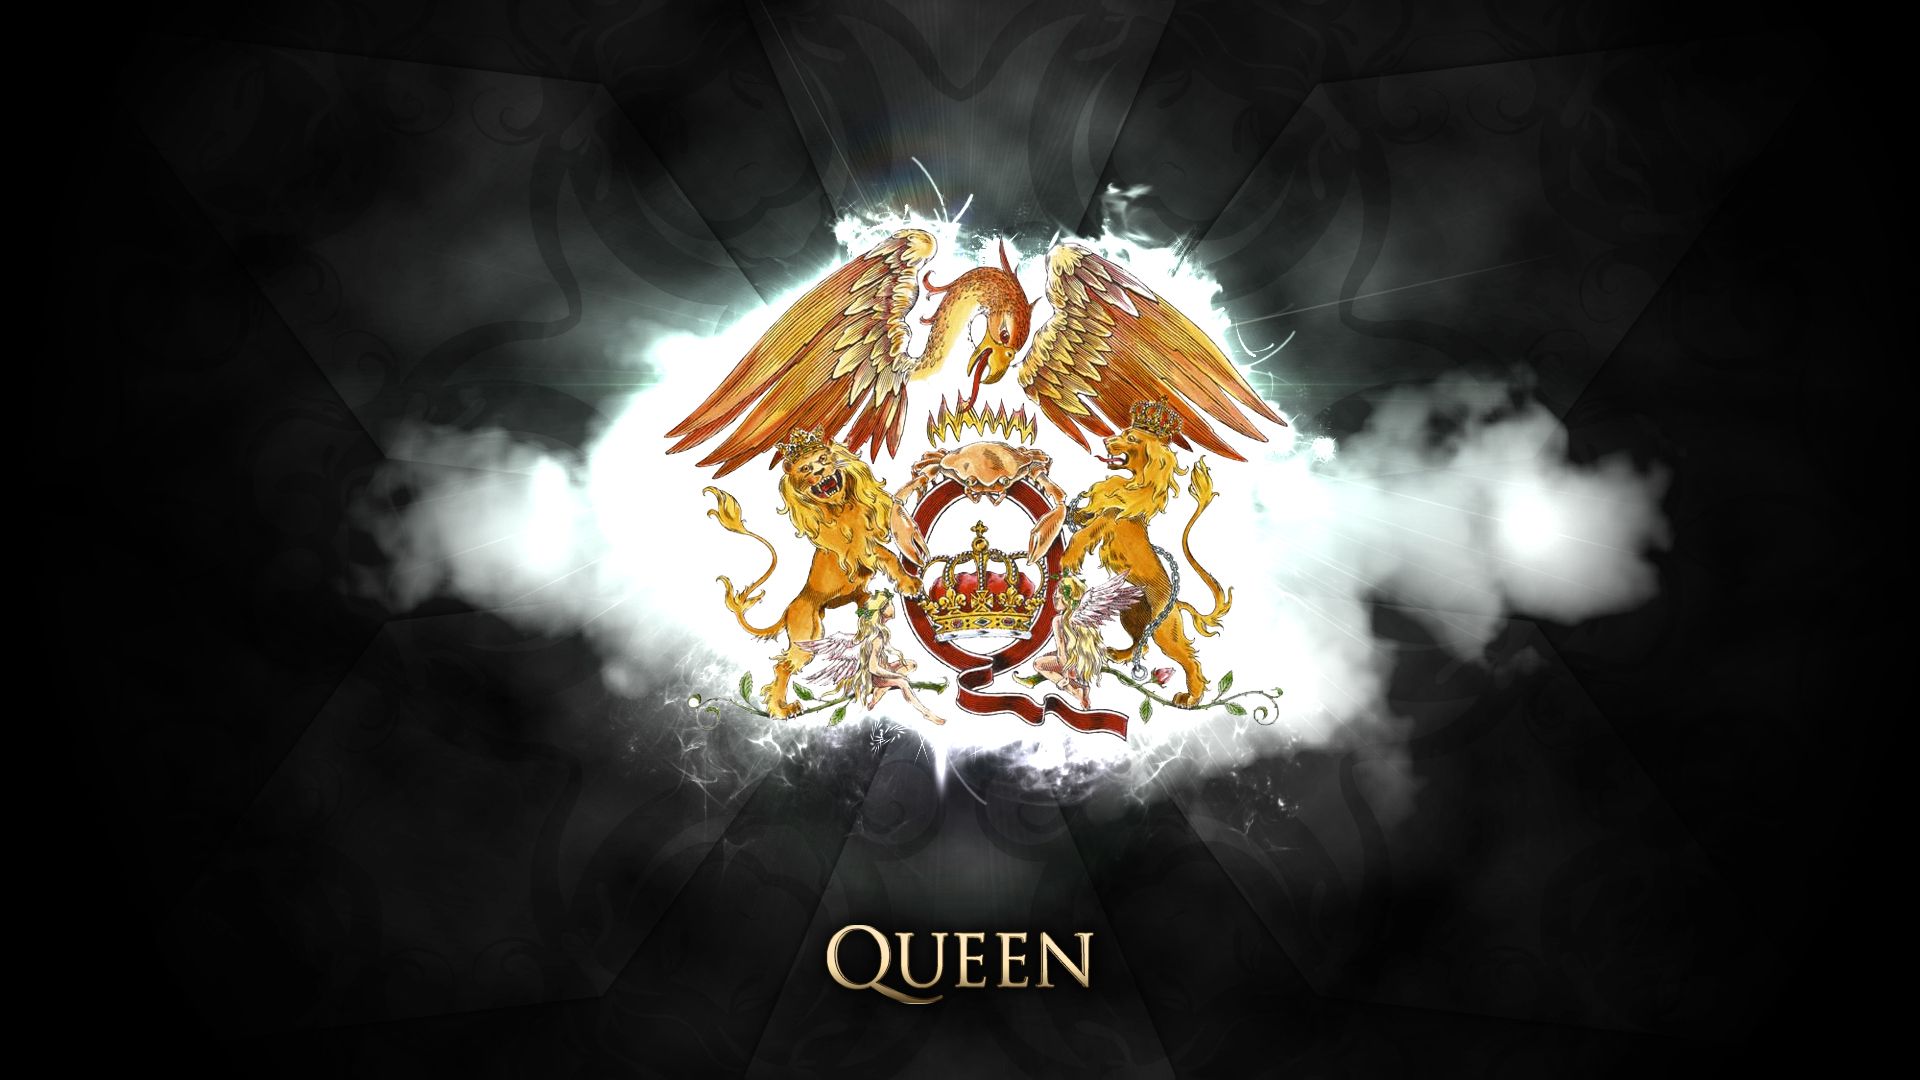 Queen Digital Art Wallpaper. Queen Emoji Wallpaper, Black Queen Wallpaper and Snow White Queen Wallpaper